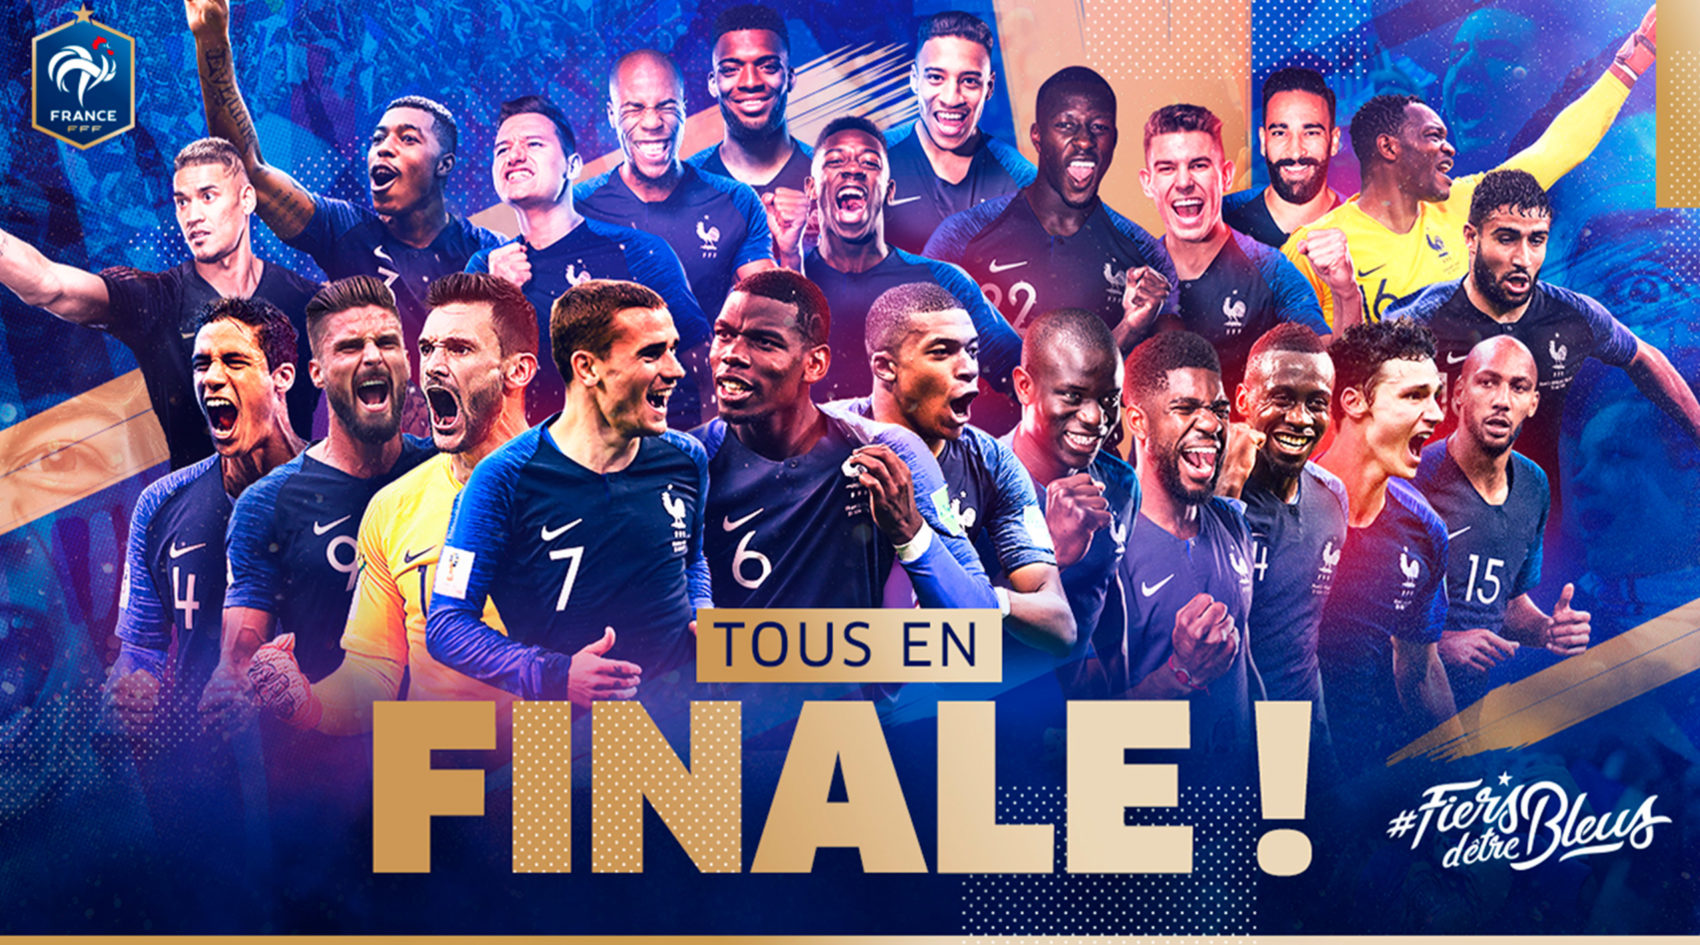 FFF_fiers_detre_bleus_federation_francaise_french_de_football_champions_monde_coupe_du_monde_world_cup